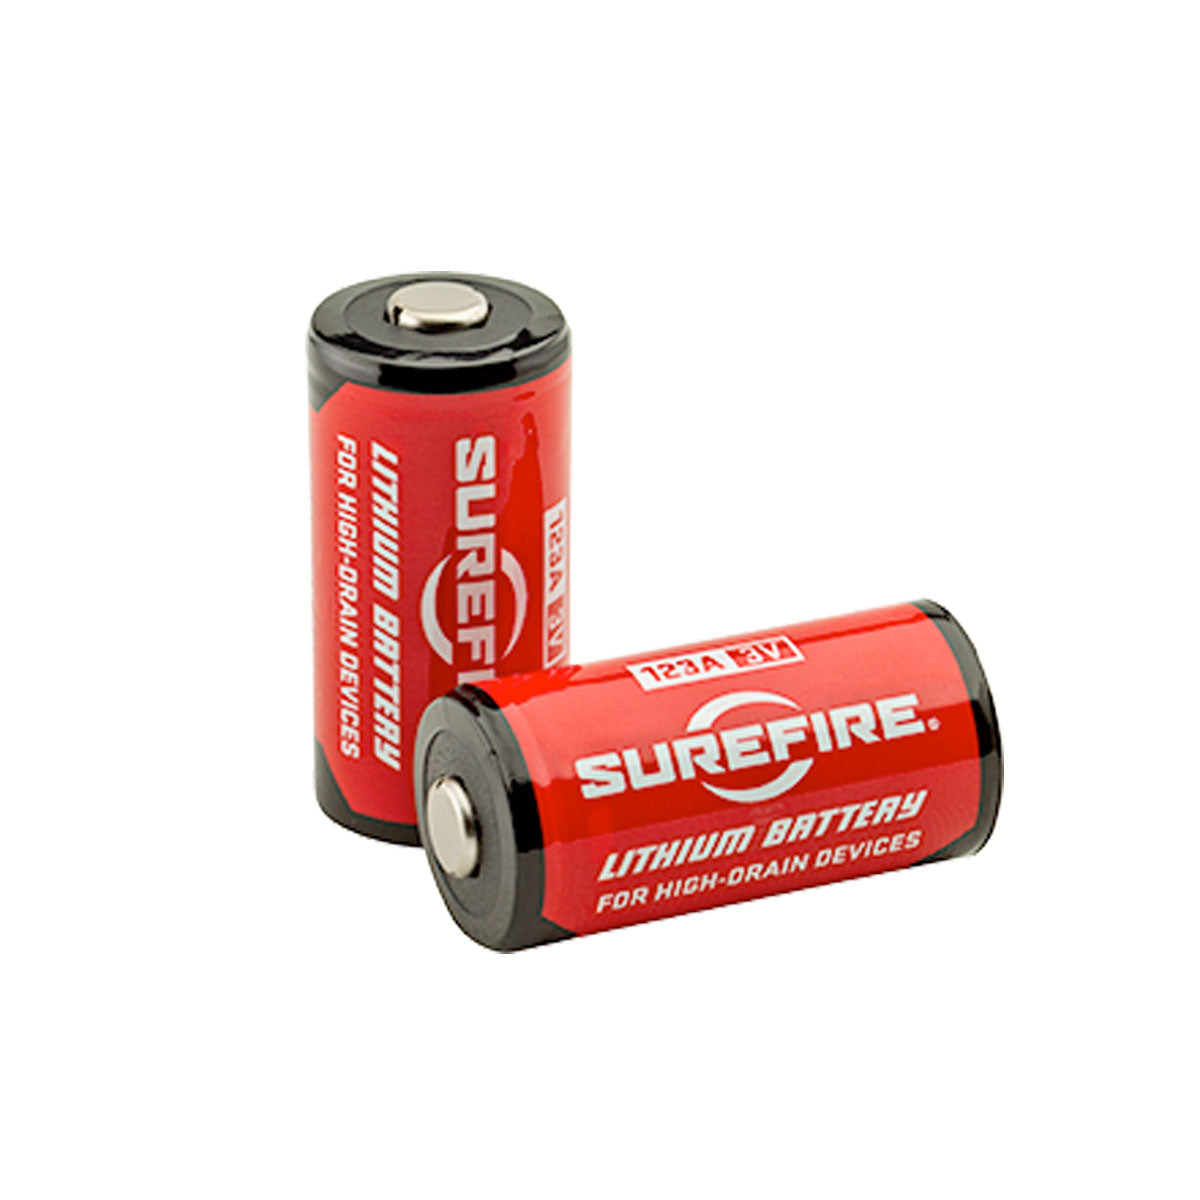 SureFire 123A Lithium Batteries 72 Pack / Box Accessories Surefire Tactical Gear Supplier Tactical Distributors Australia